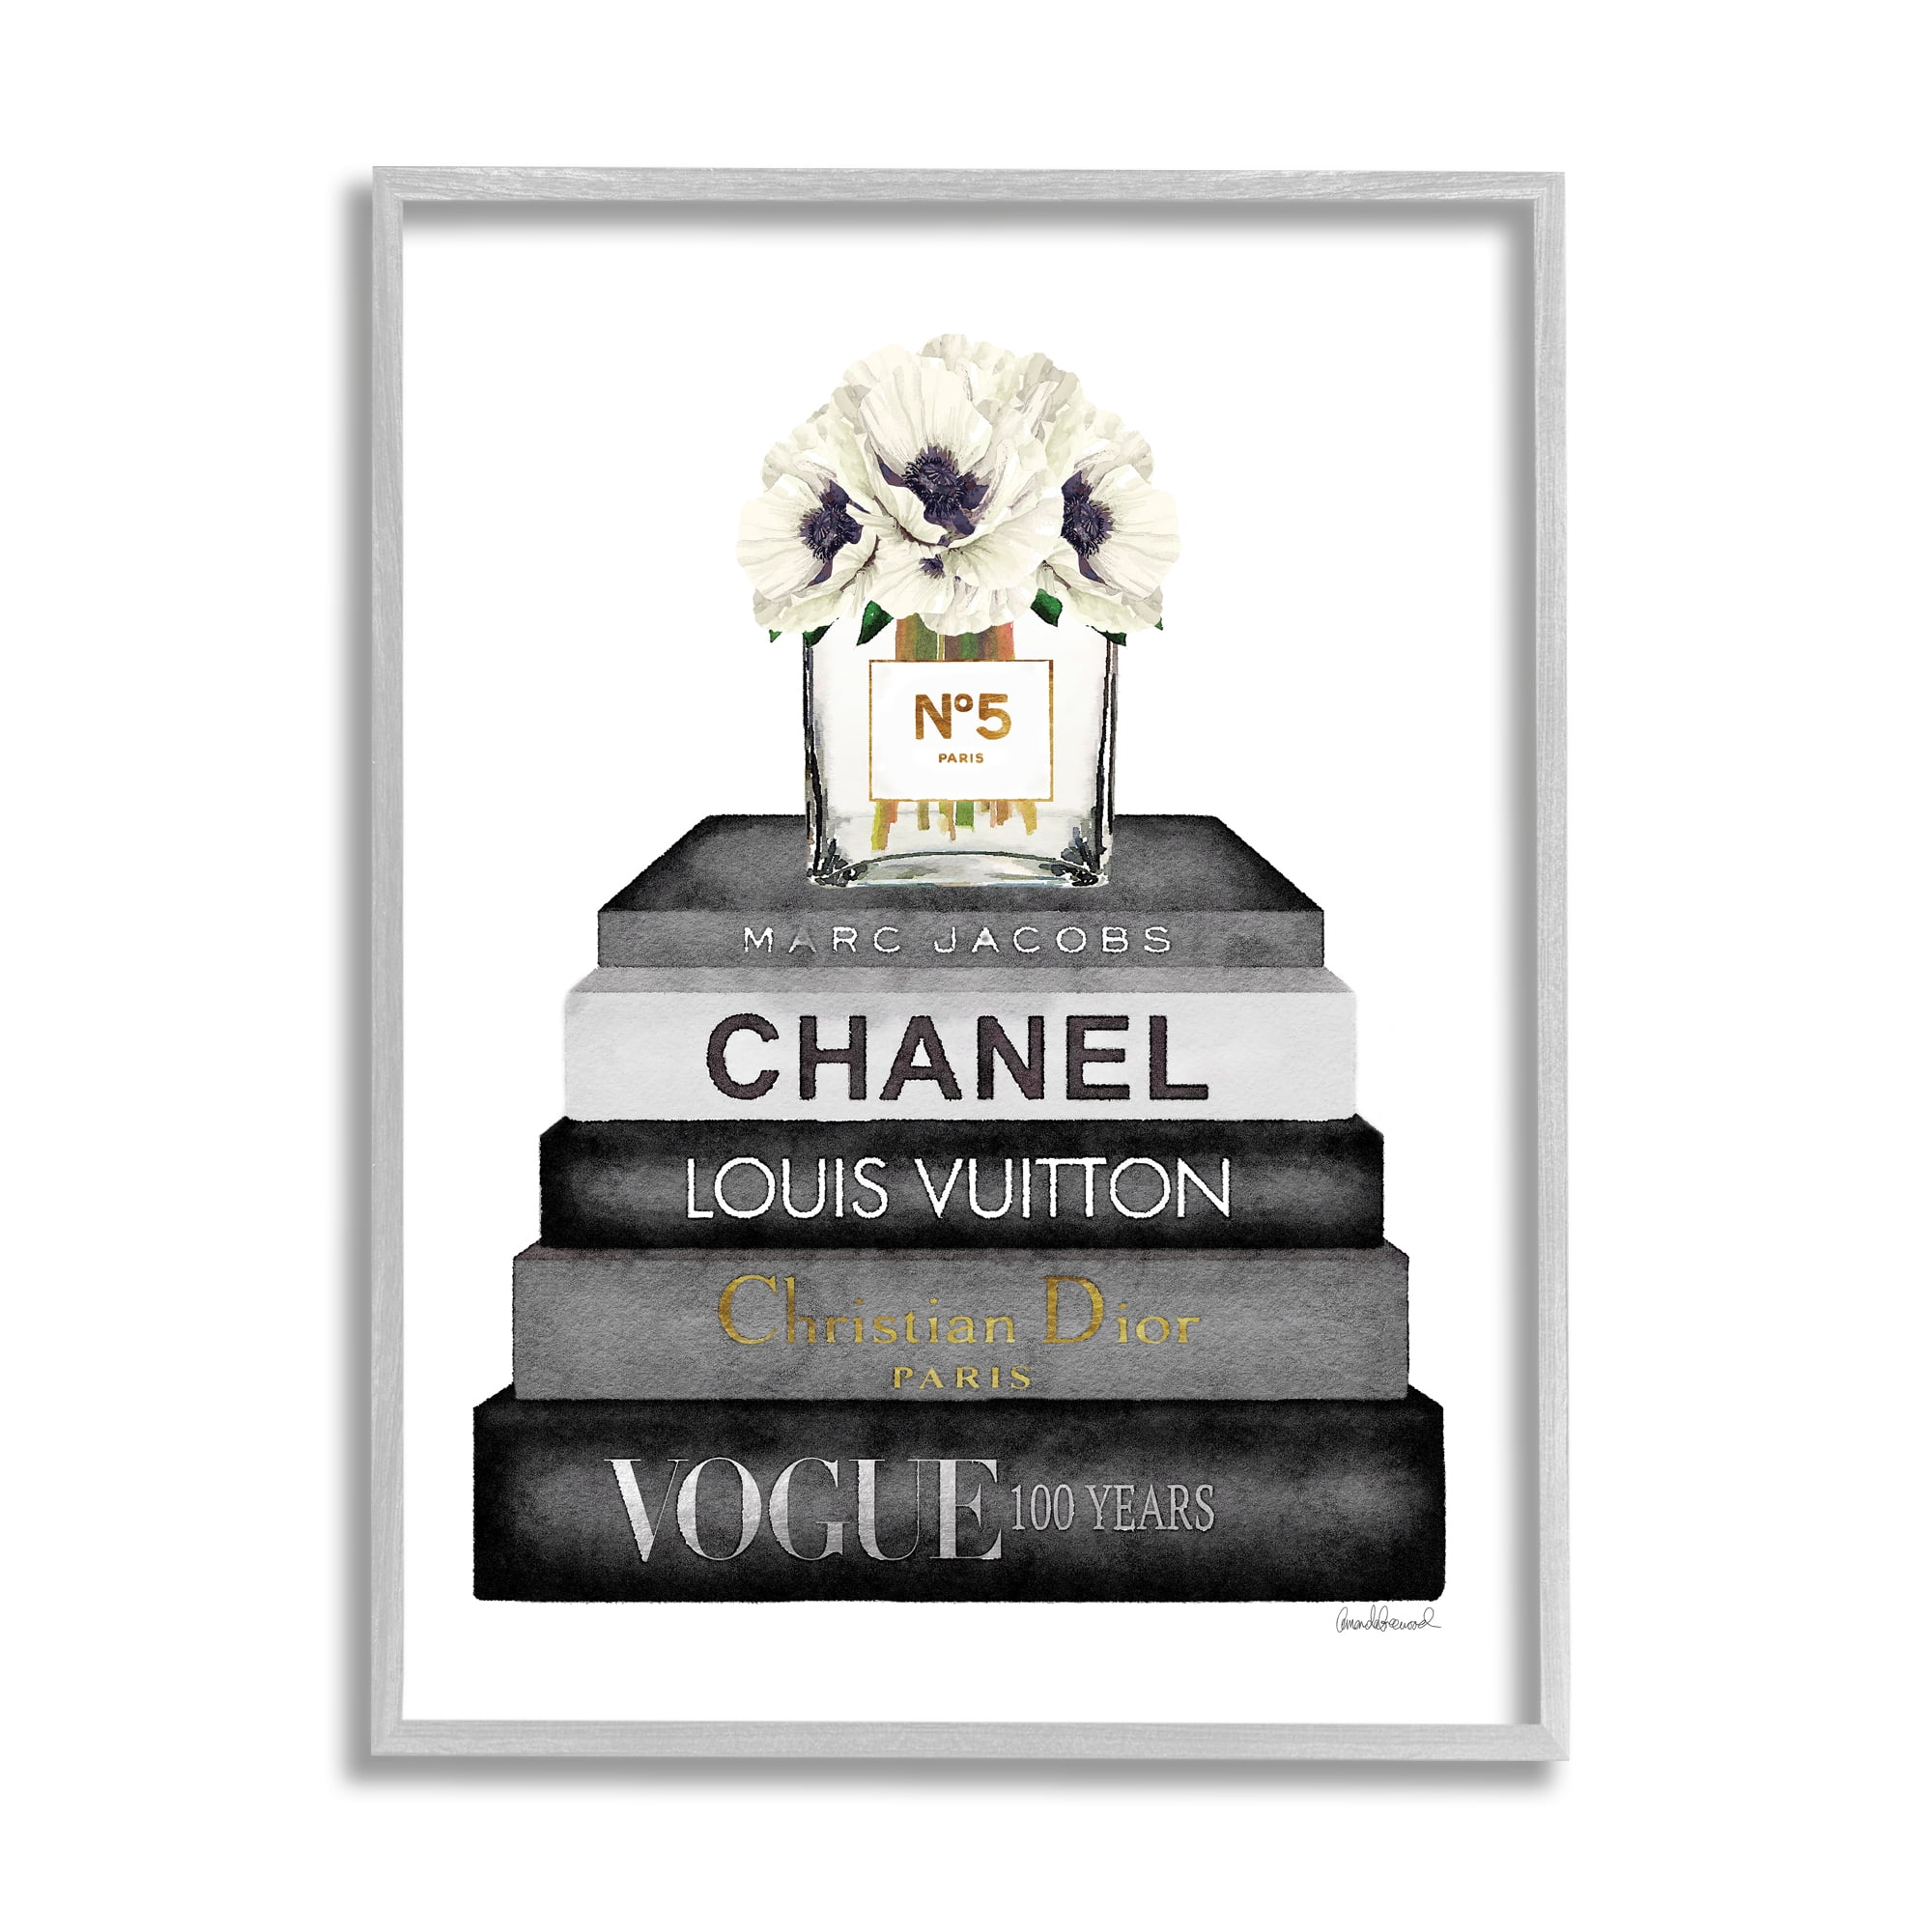 Wall Decor, 11x14 Wall Art Louis Vuitton